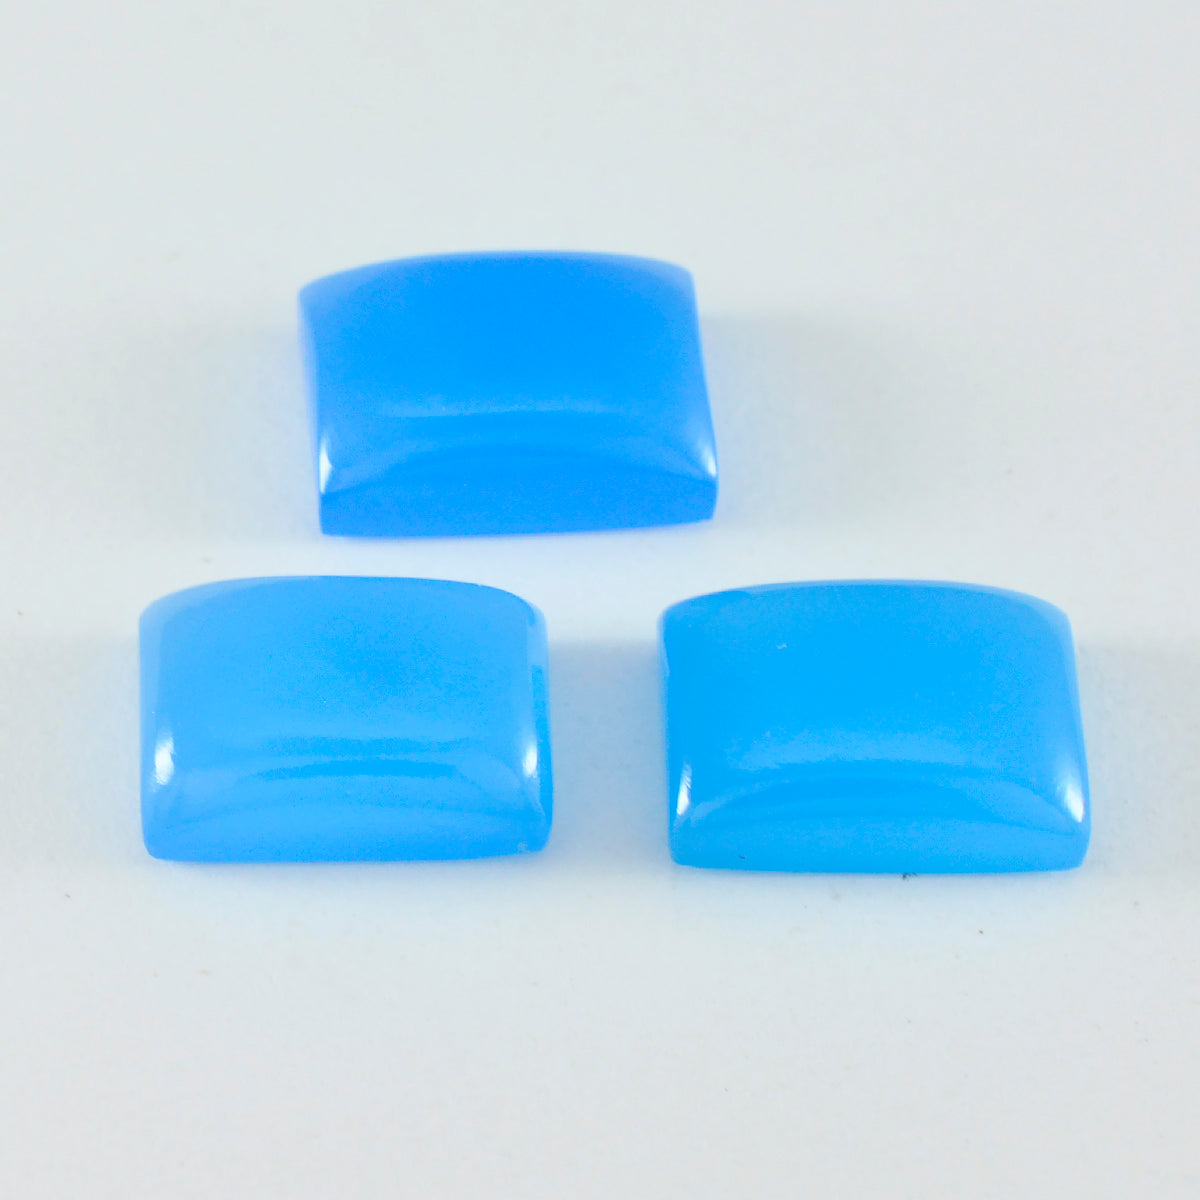 Riyogems 1 Stück blauer Chalcedon-Cabochon, 10 x 14 mm, achteckige Form, gut aussehender Qualitätsstein